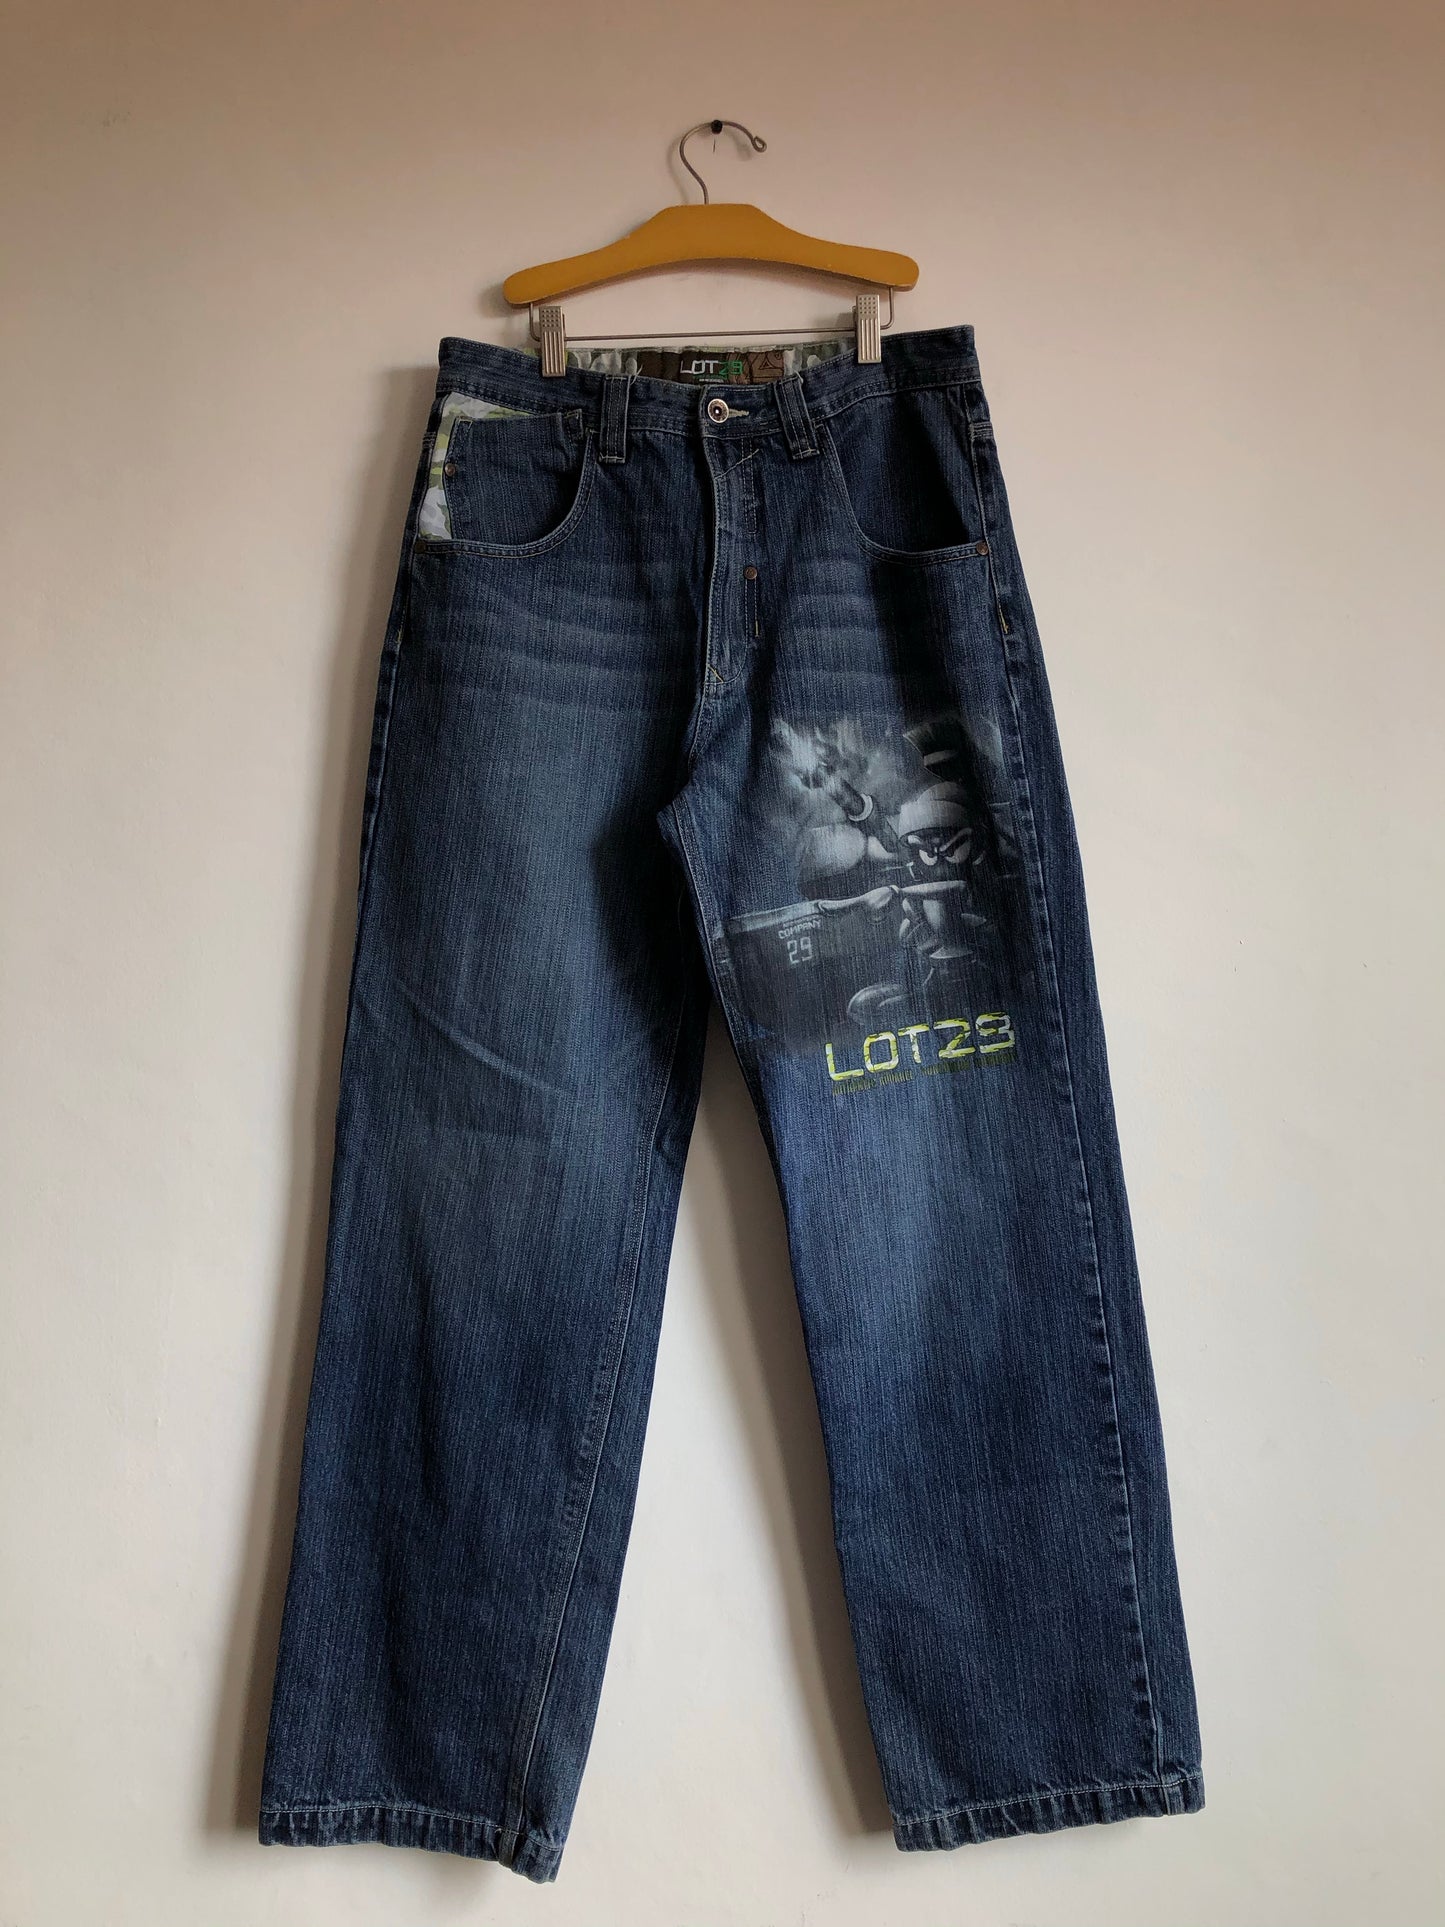 Jeans Lot 29 00's